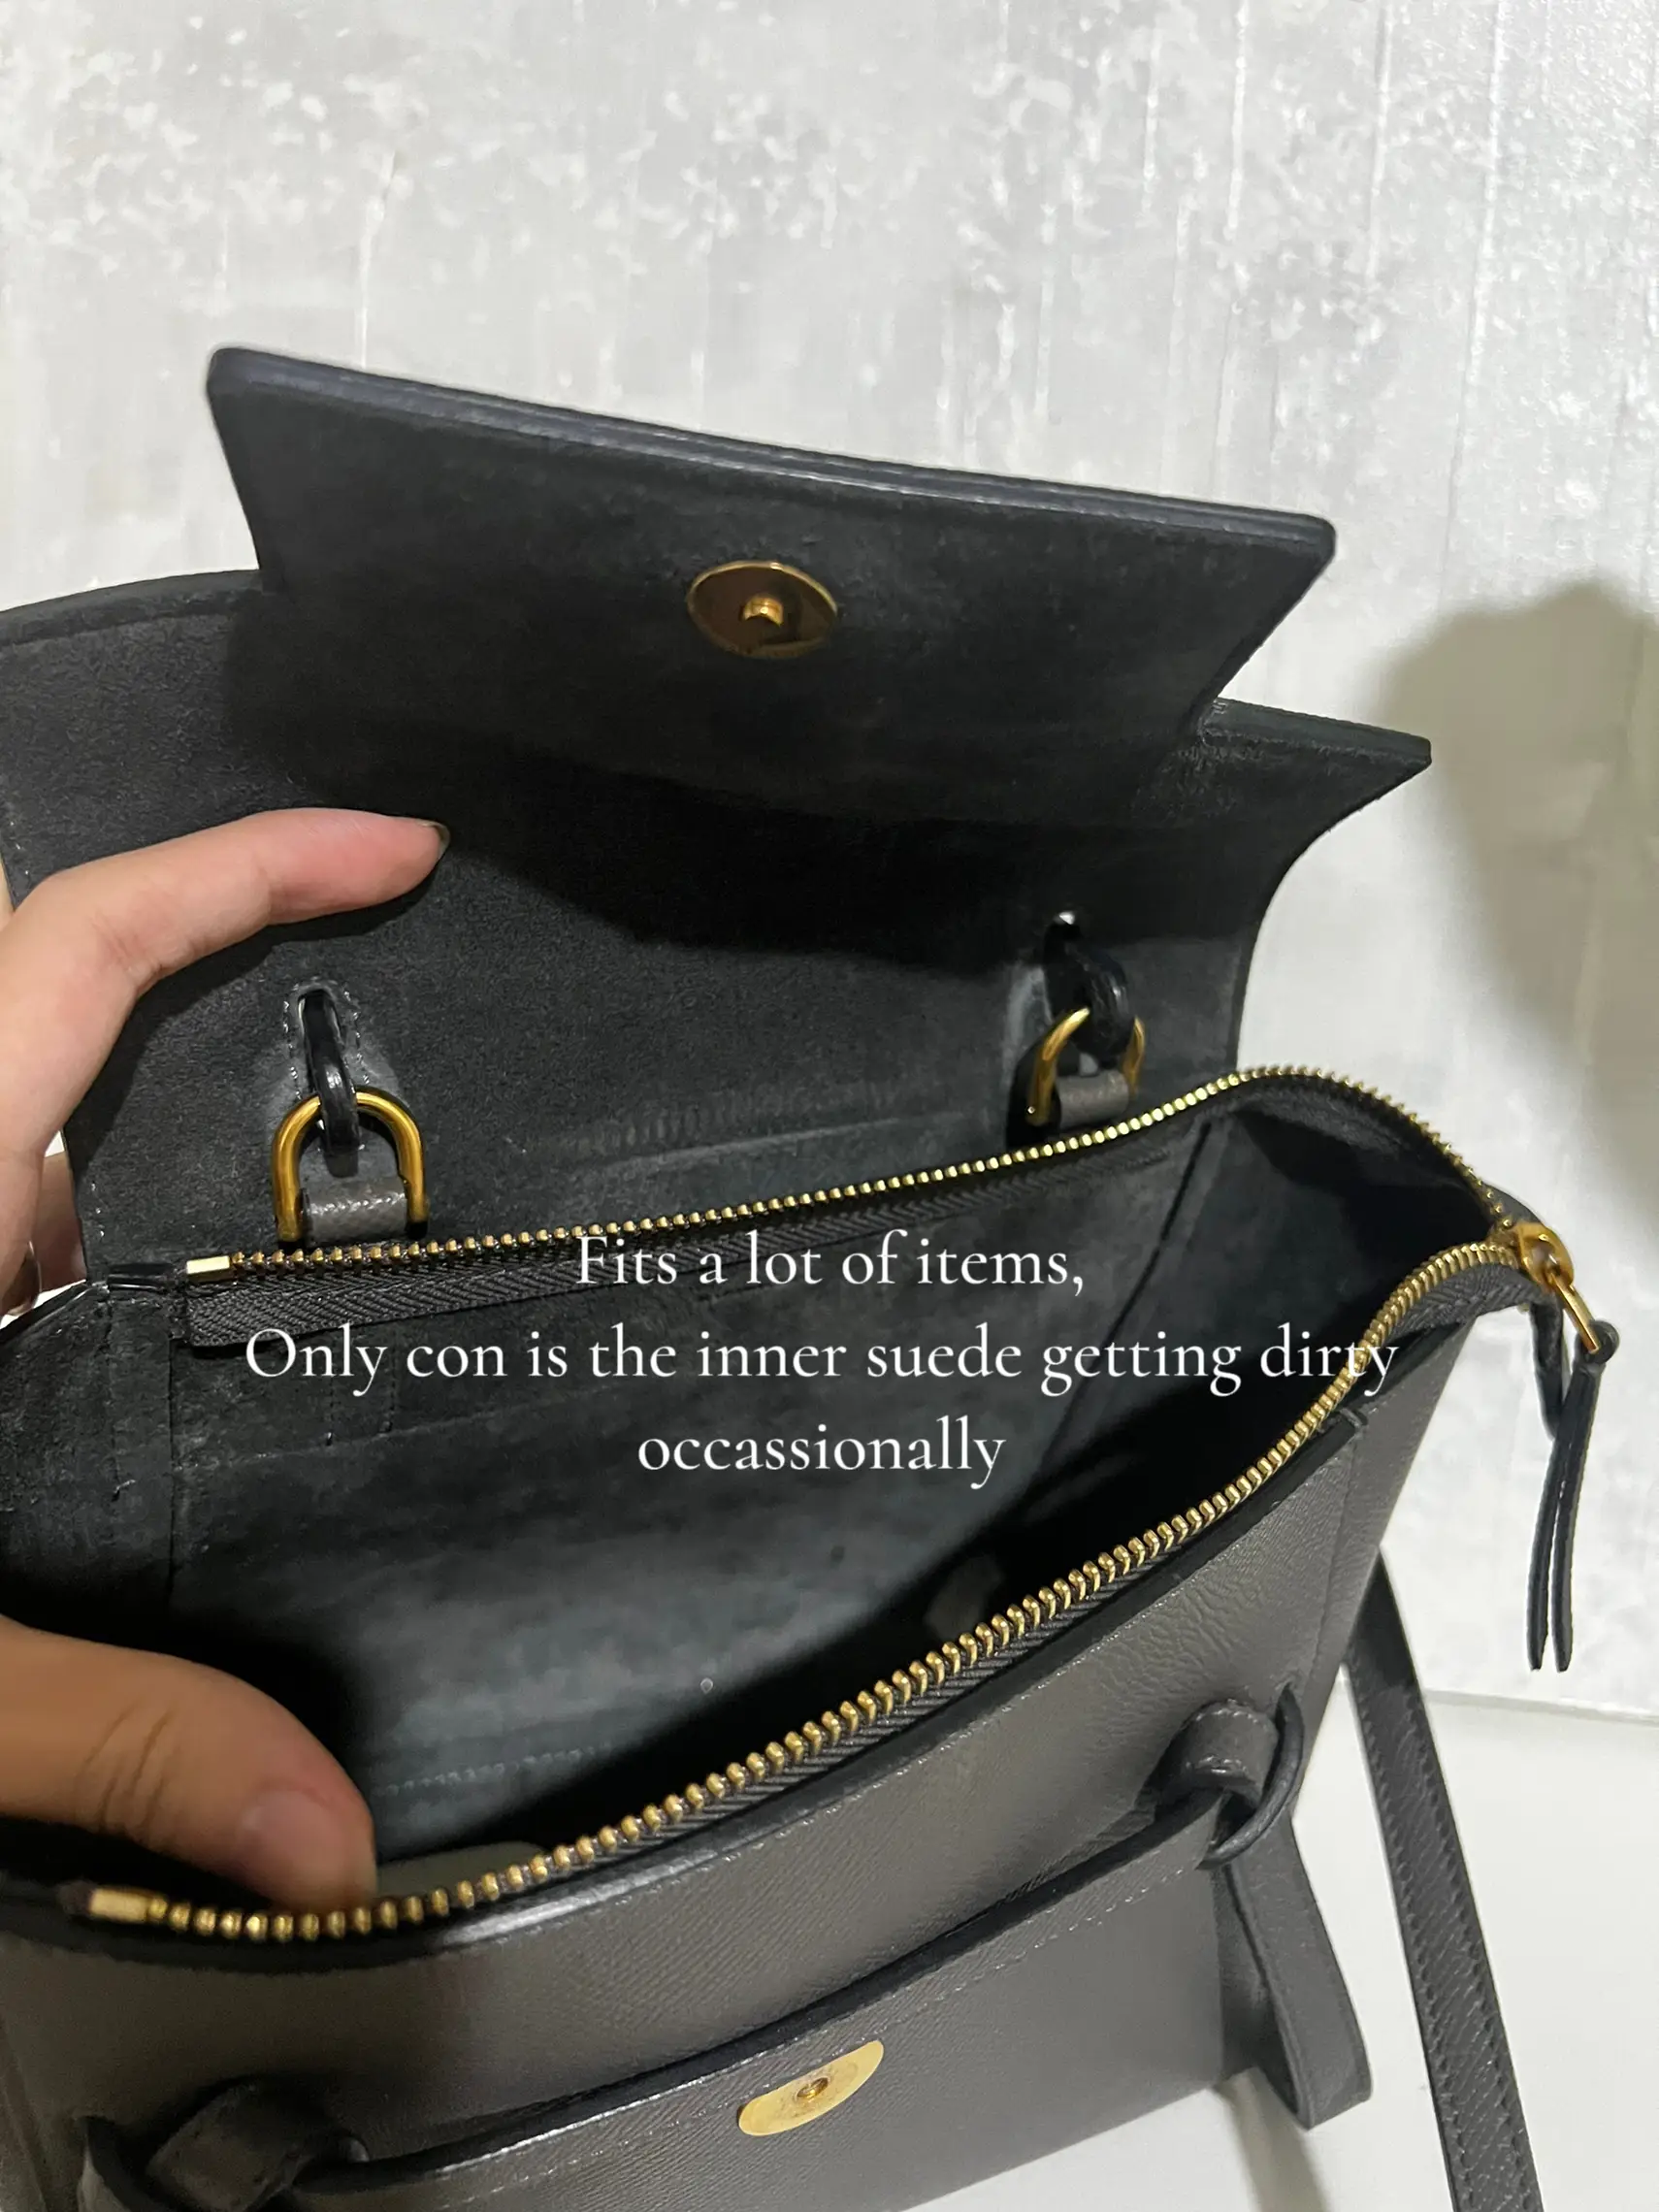 I am a proud owner of Celine Pico Belt Bag 🥰 : r/handbags